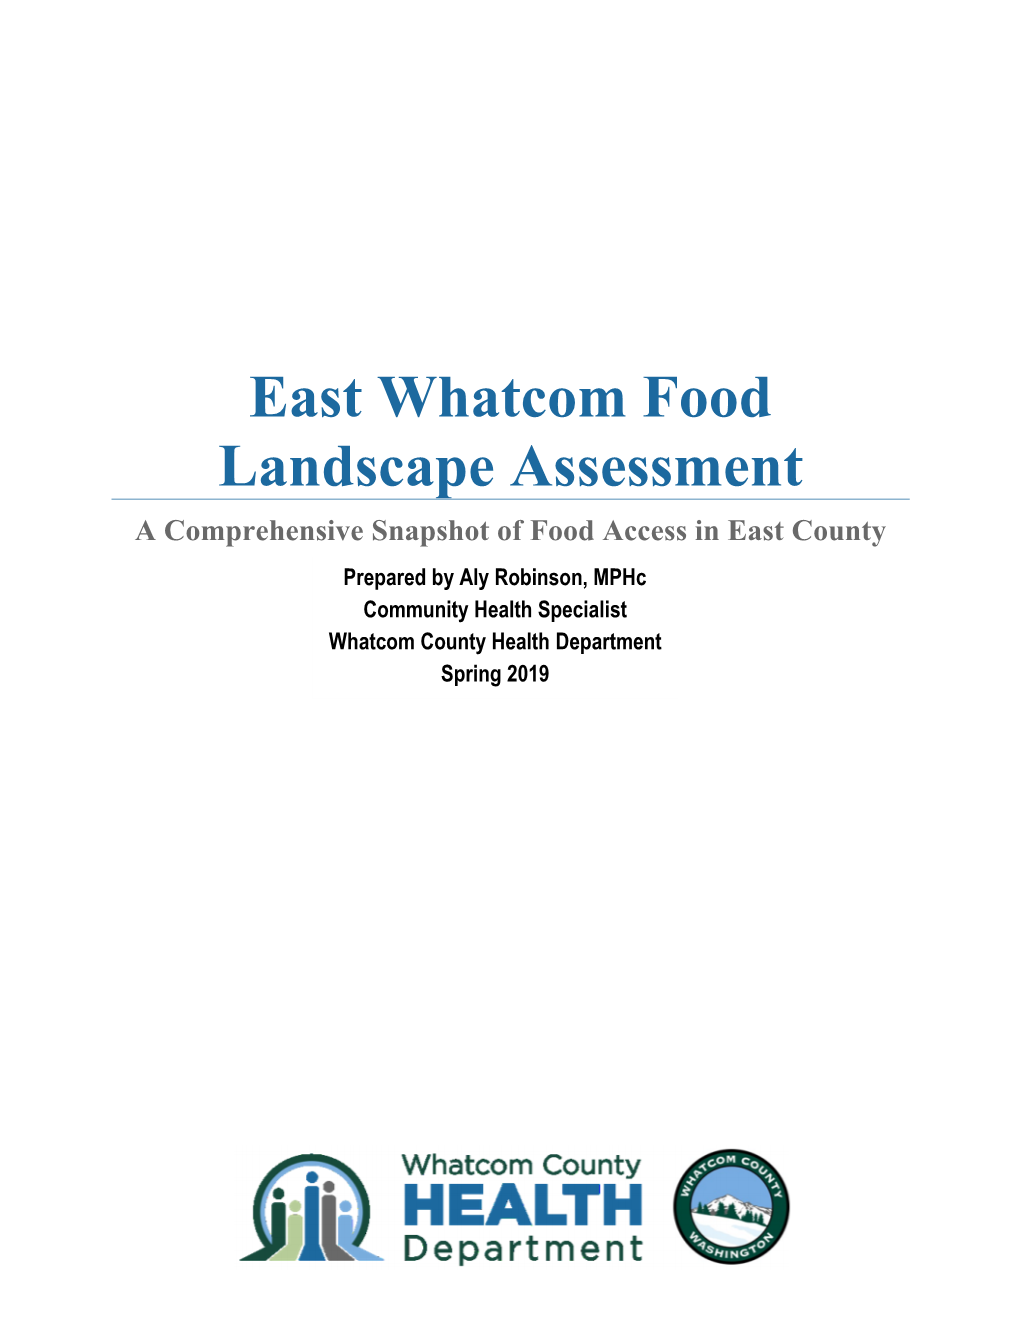 East Whatcom Food Landscape Assessment